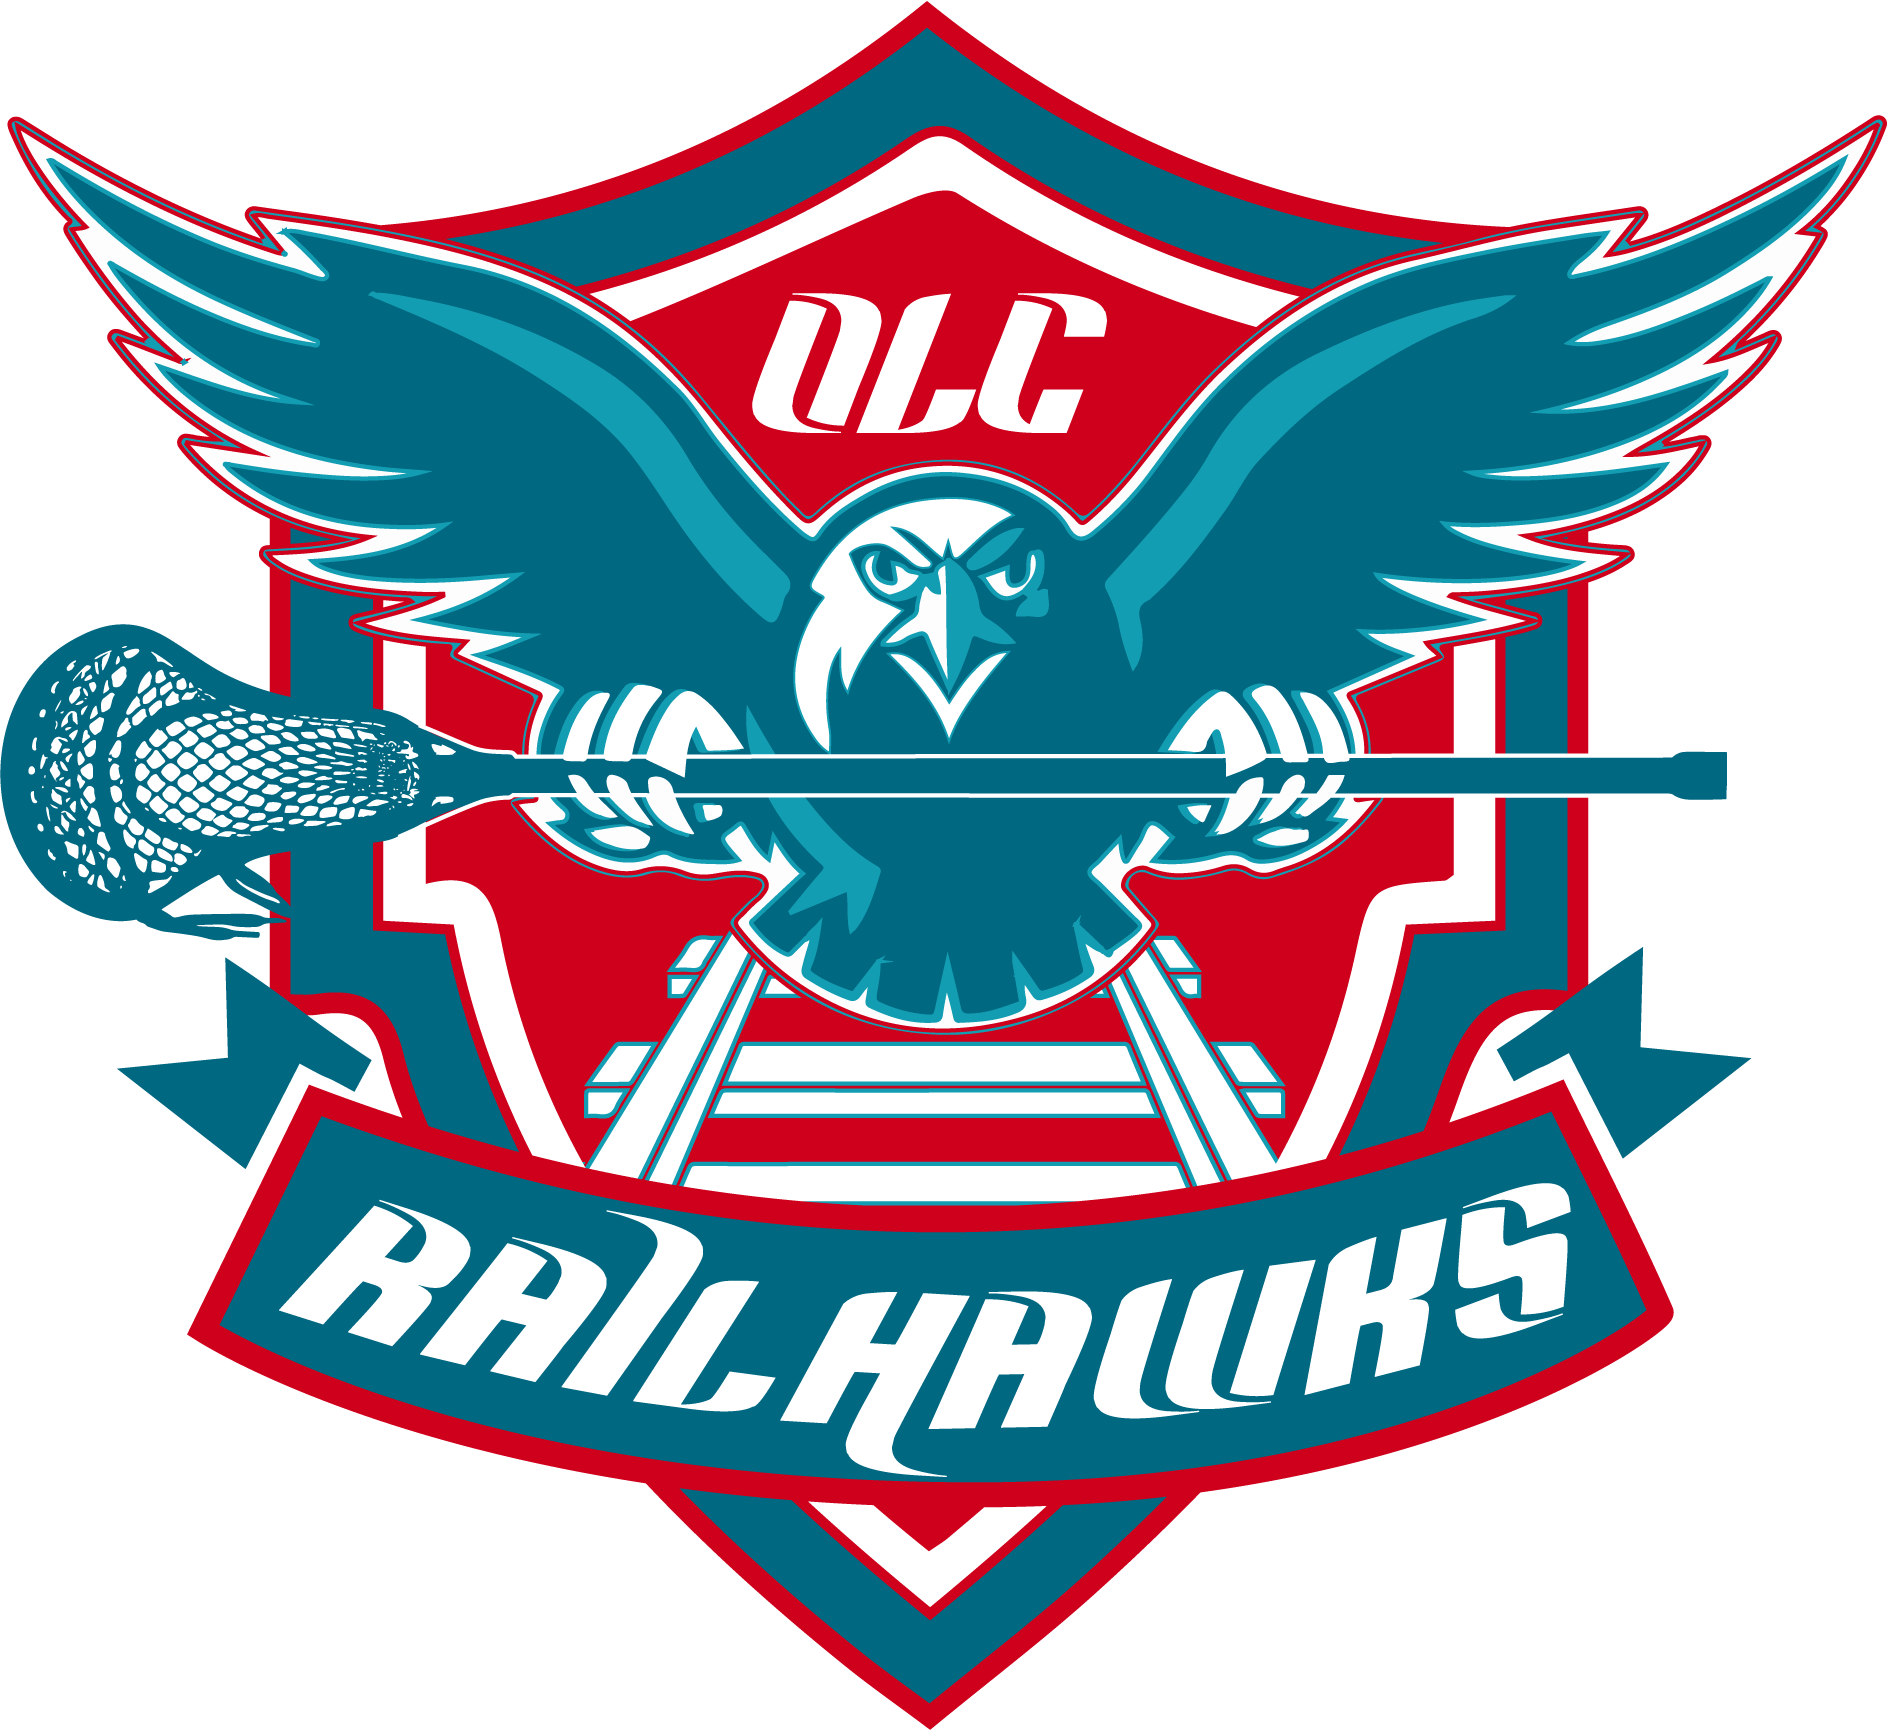 OCL_Rail_Hawks_logo_final (1)